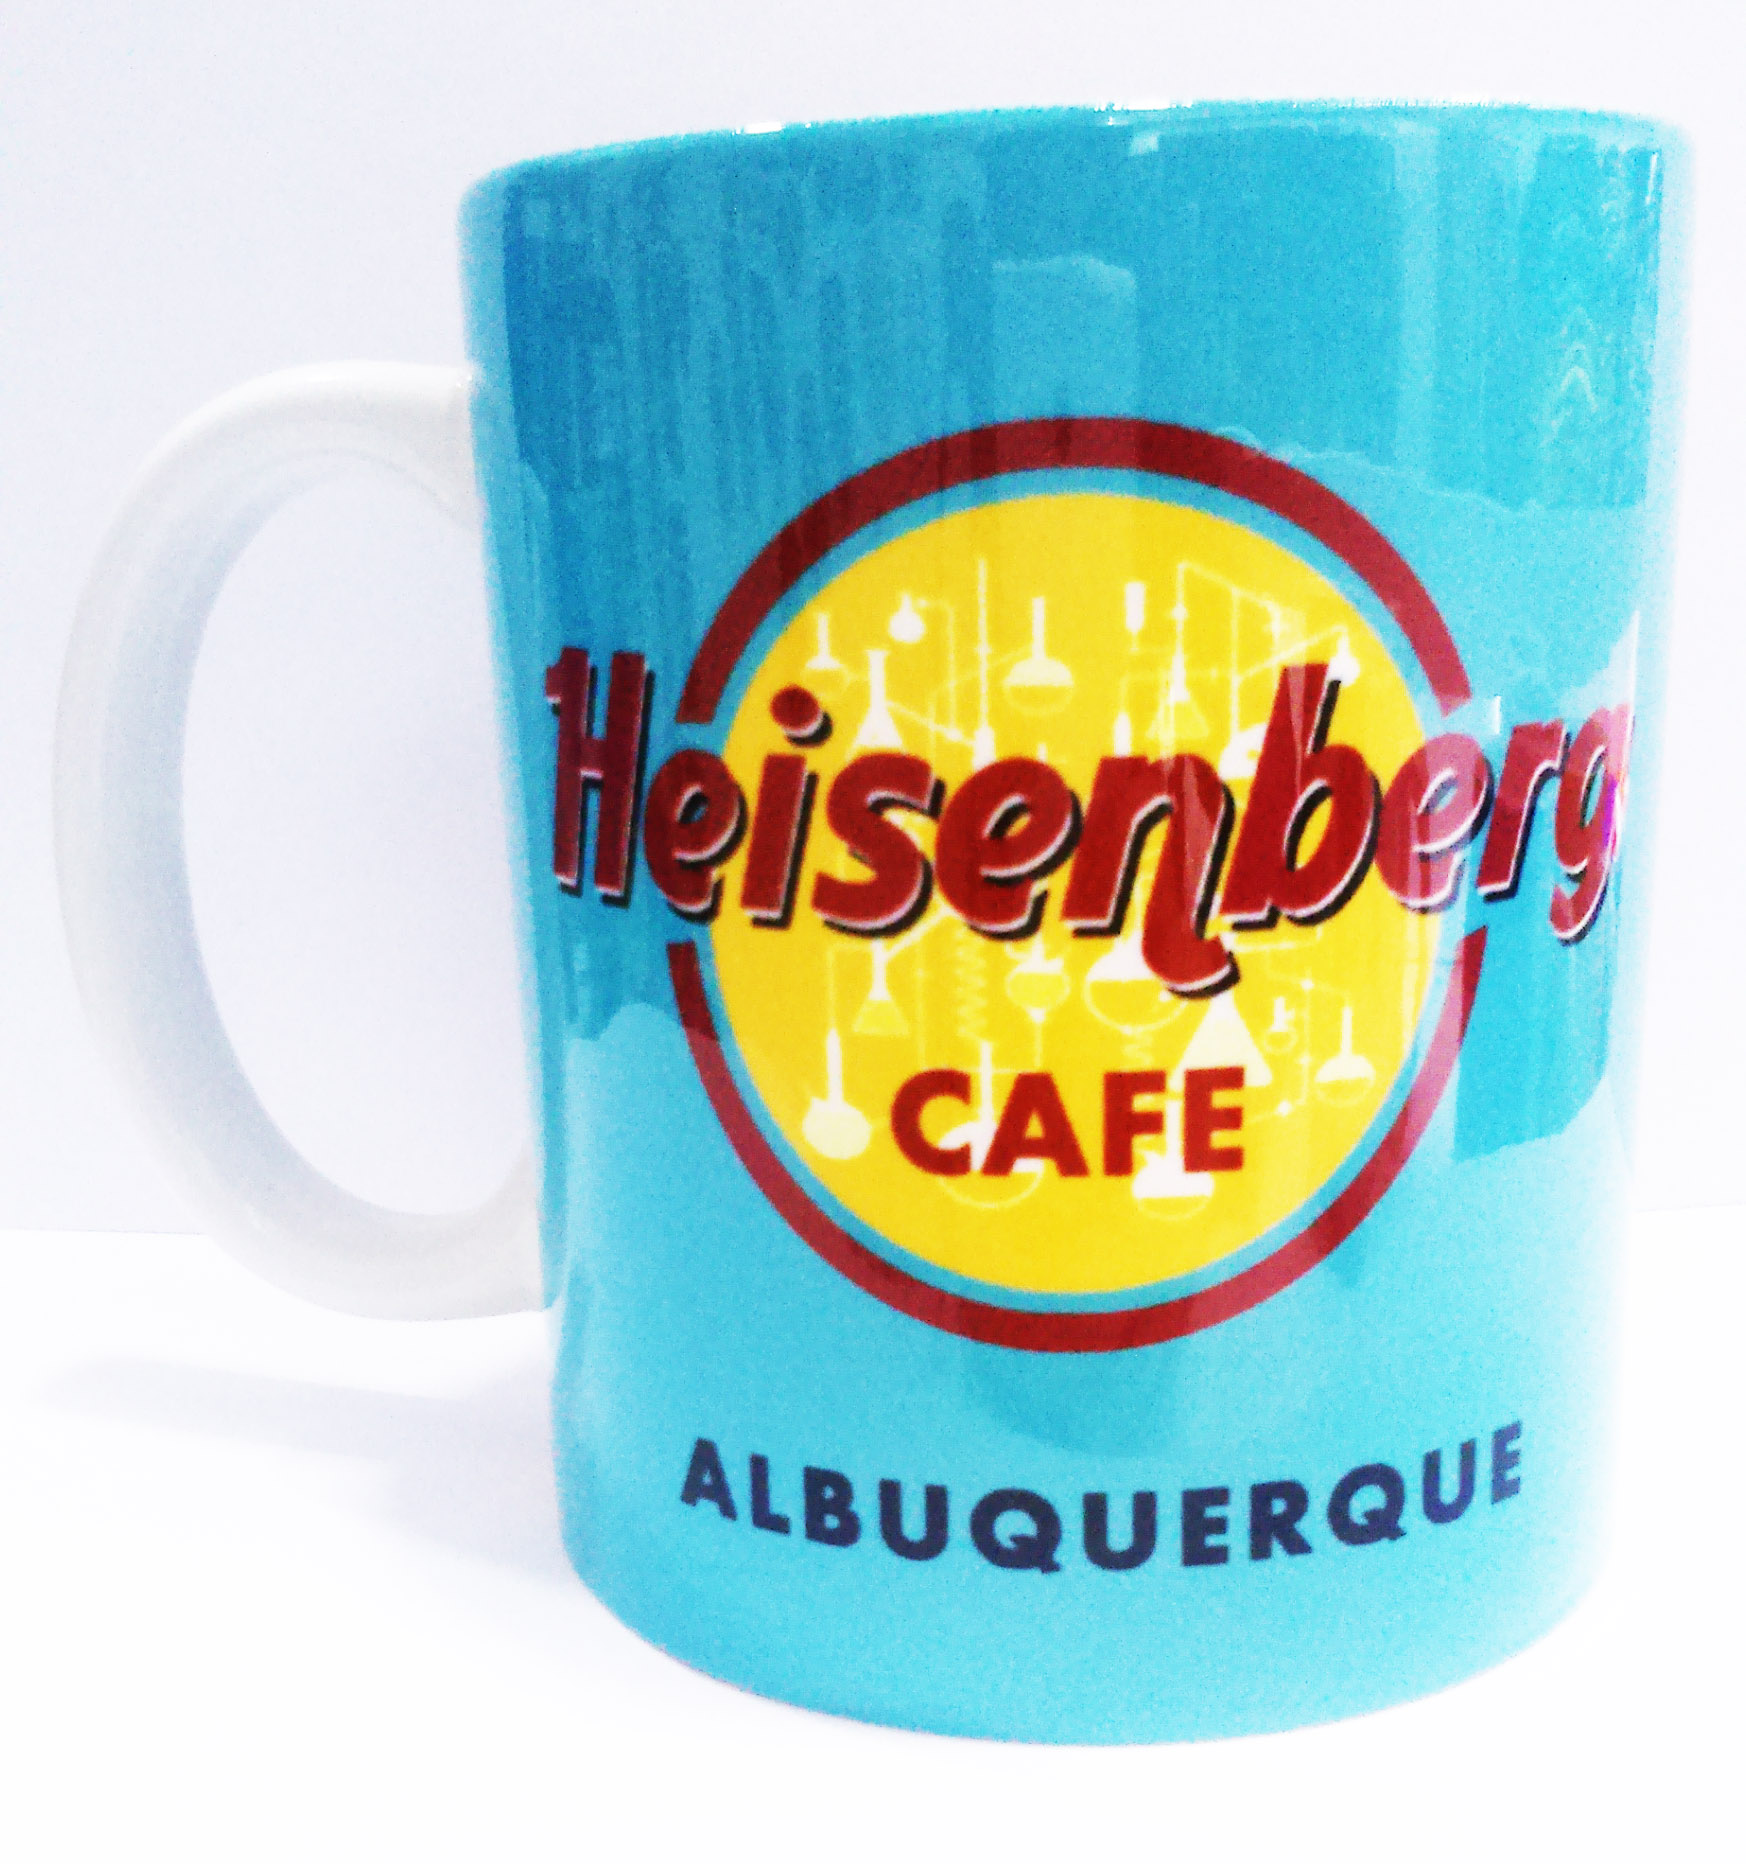 Heisenberg Café. Albuquerque